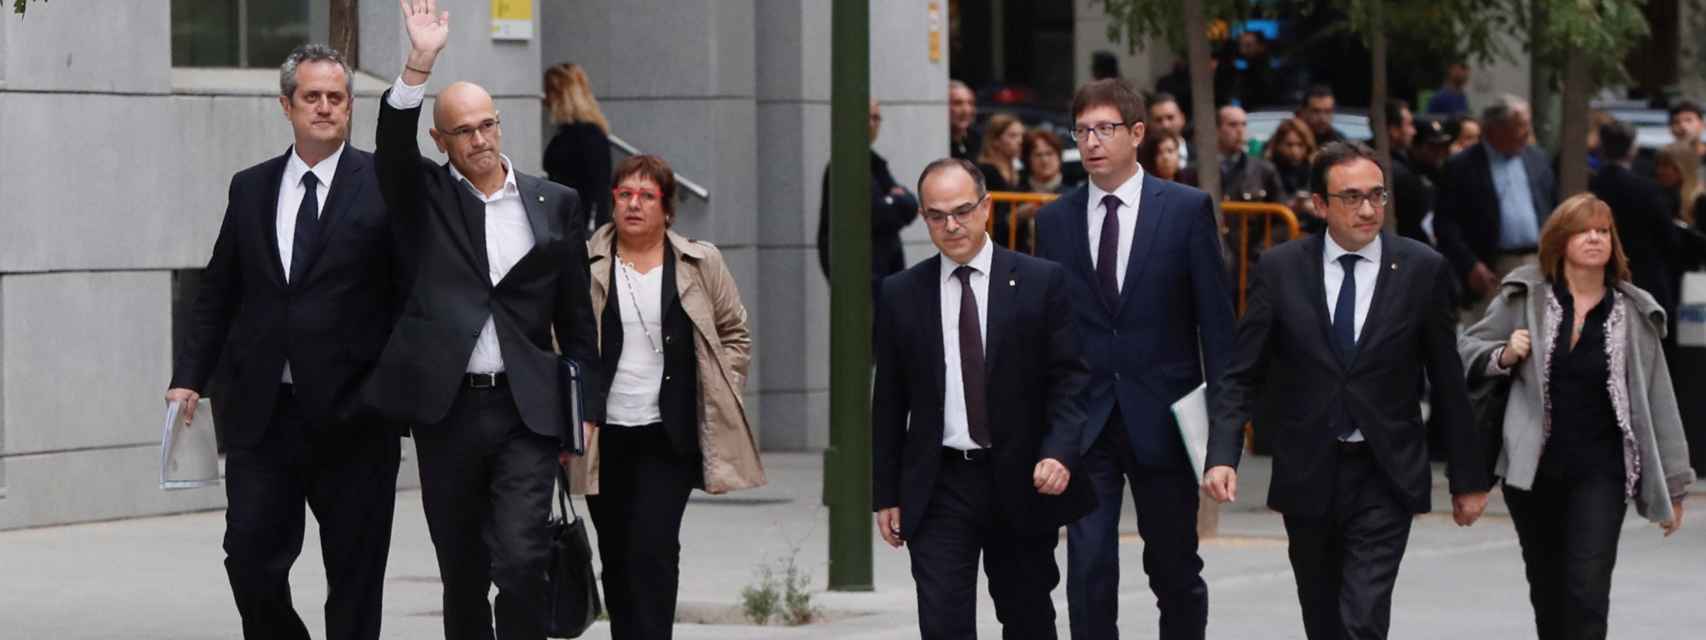 Joaquín Forn, Raül Romeva, Dolors Bassa, Jordi Turull, Josep Rull y Meritxell Borrás a su llegada a la sede de la Audiencia Nacional